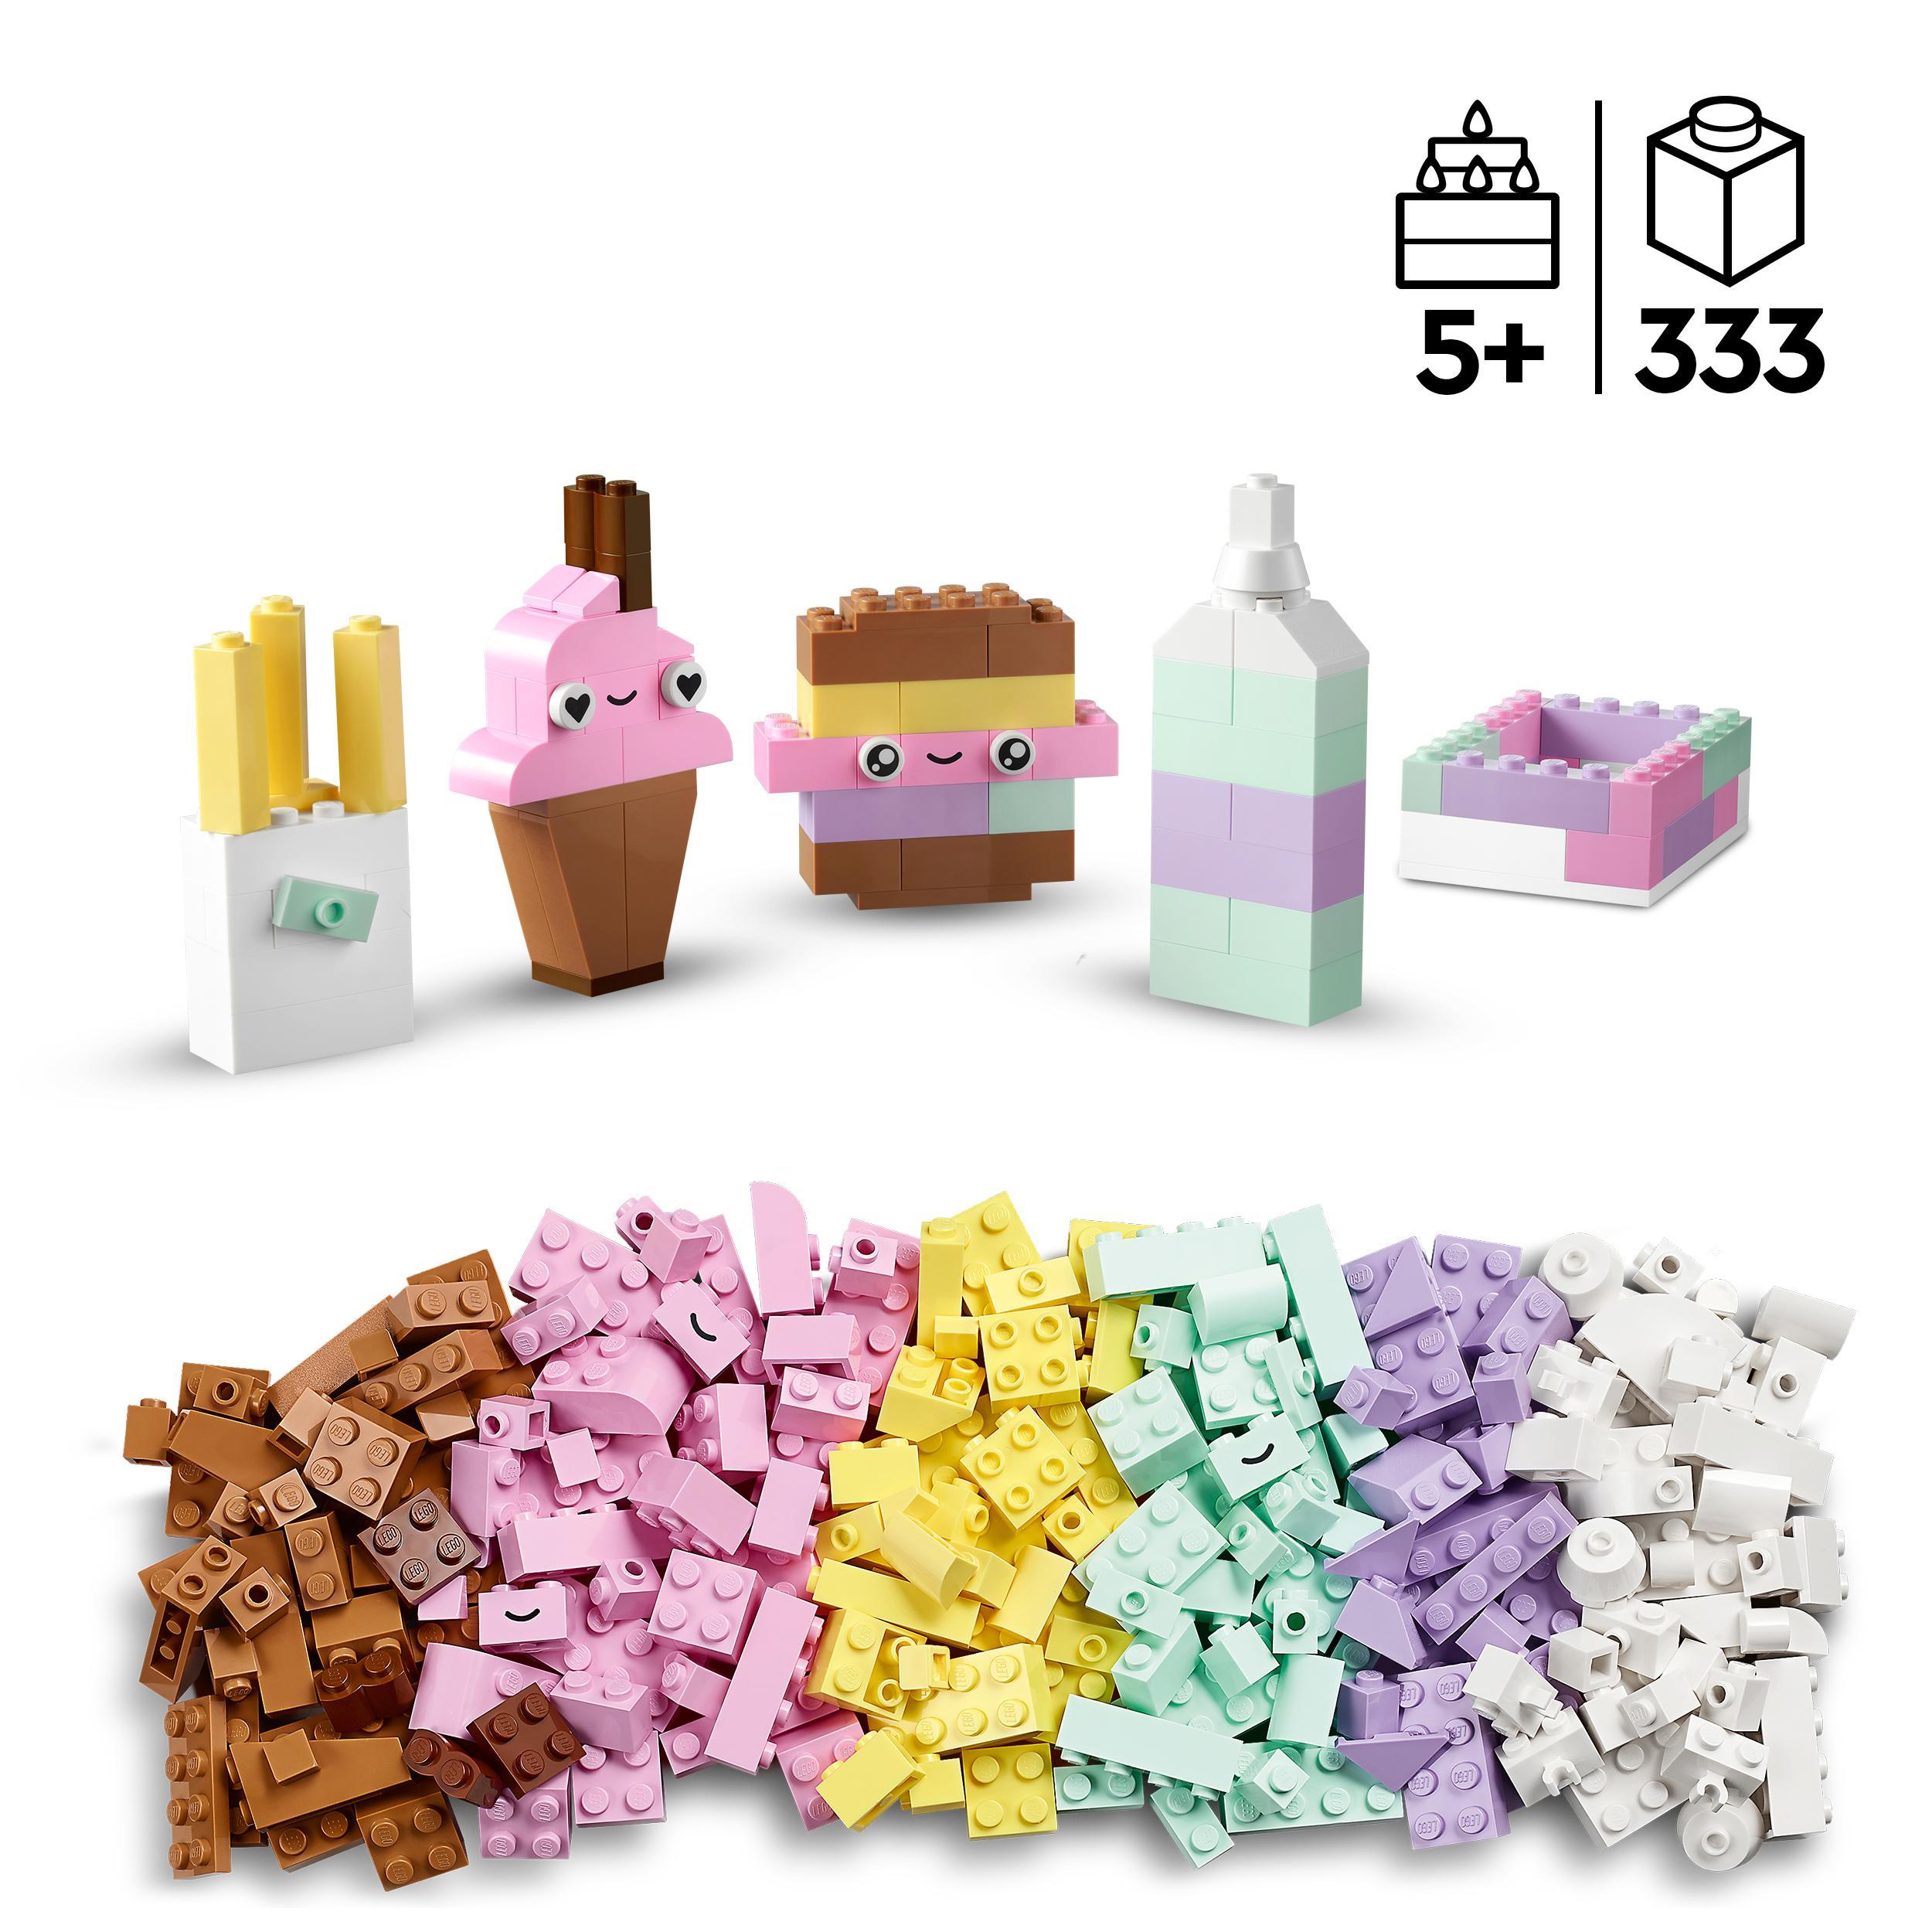 Lego classic 11028 divertimento creativo pastelli, set costruzioni in mattoncini con dinosauro giocattolo, giochi per bambini - LEGO CLASSIC